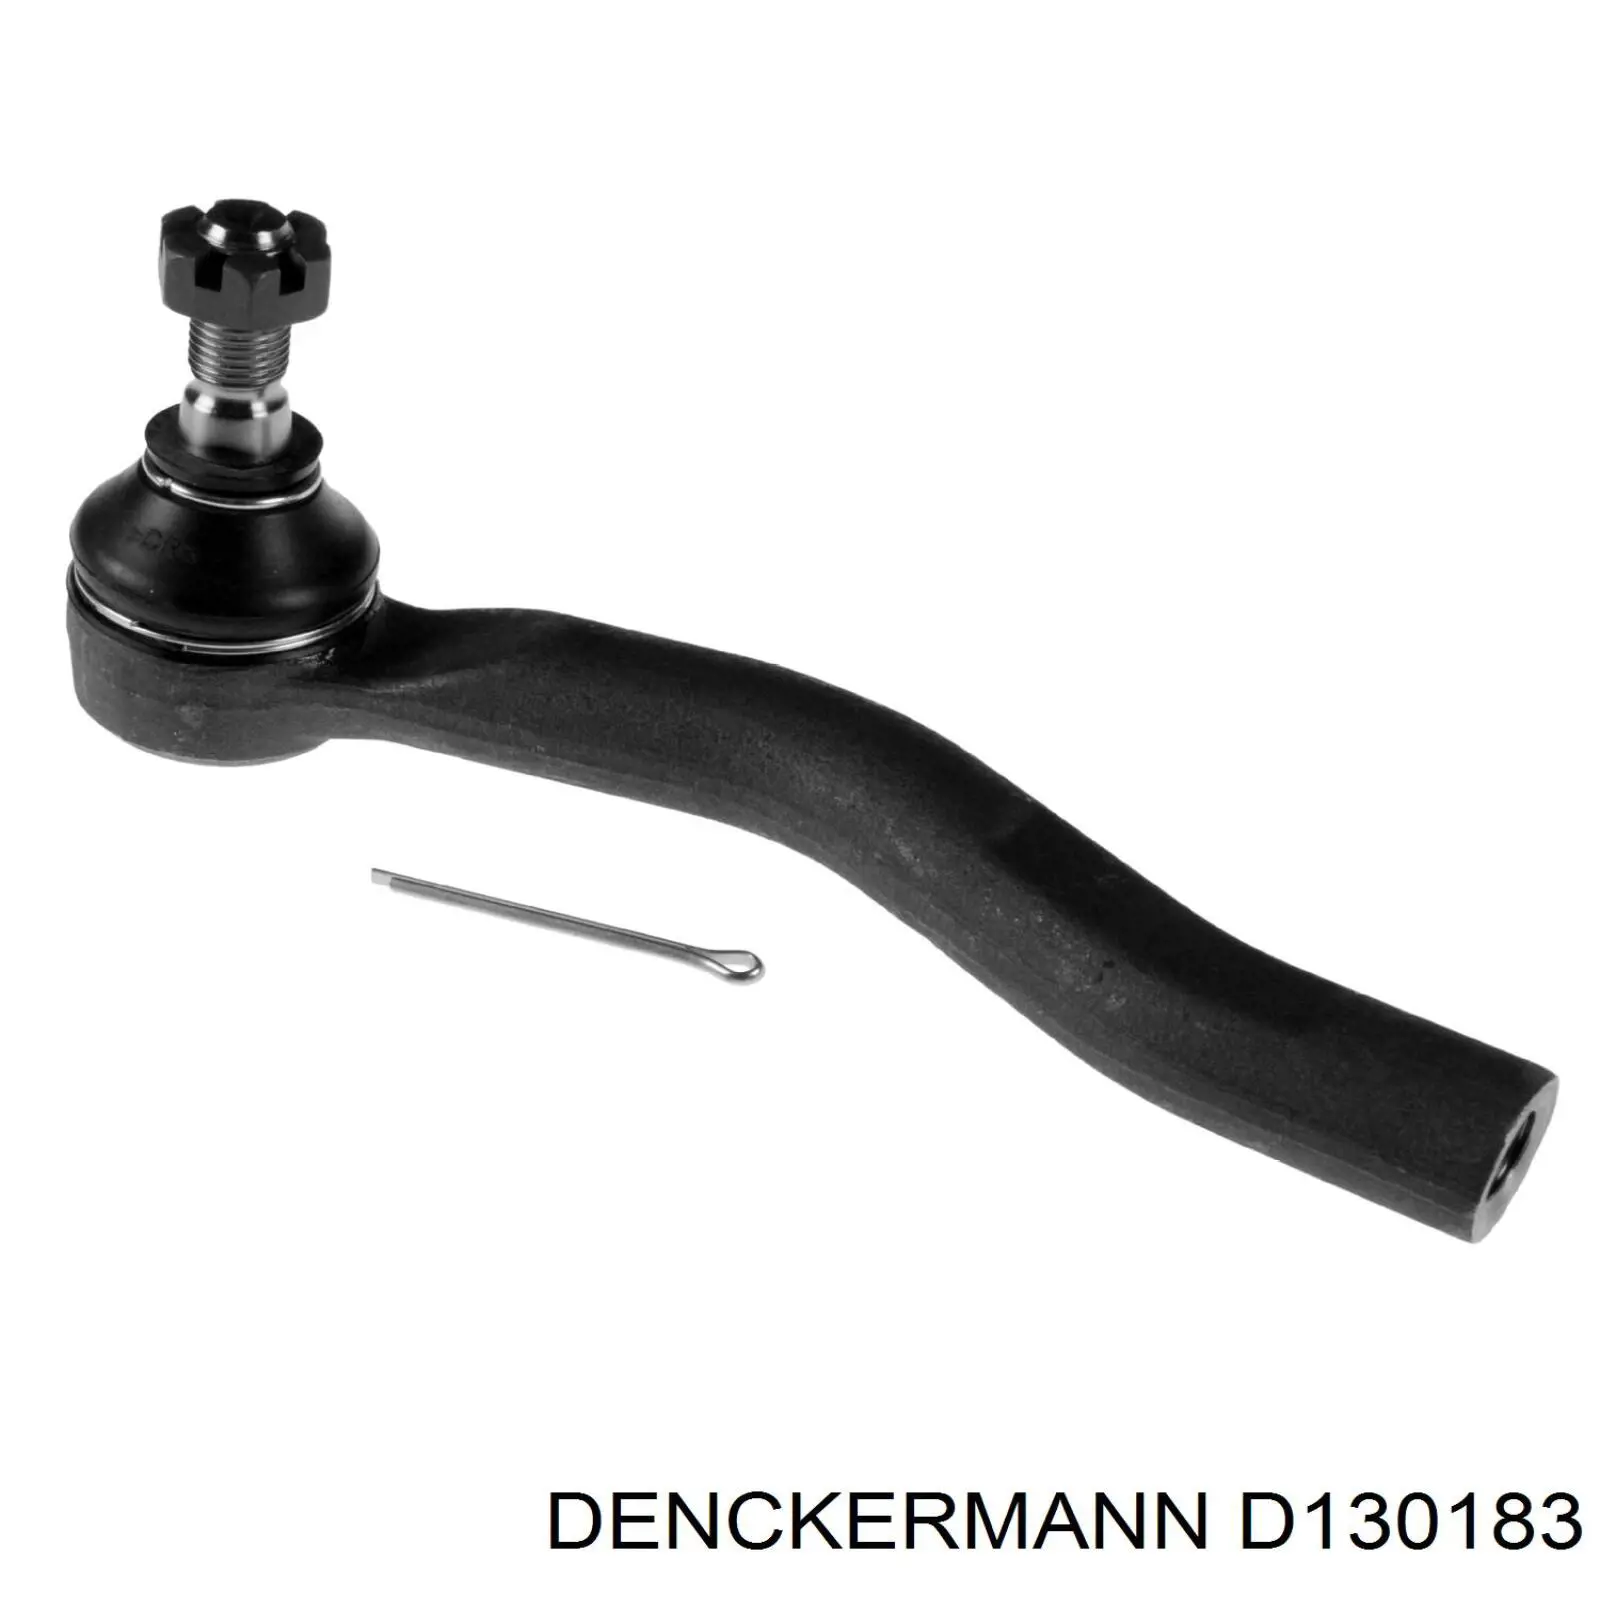 D130183 Denckermann rótula barra de acoplamiento exterior